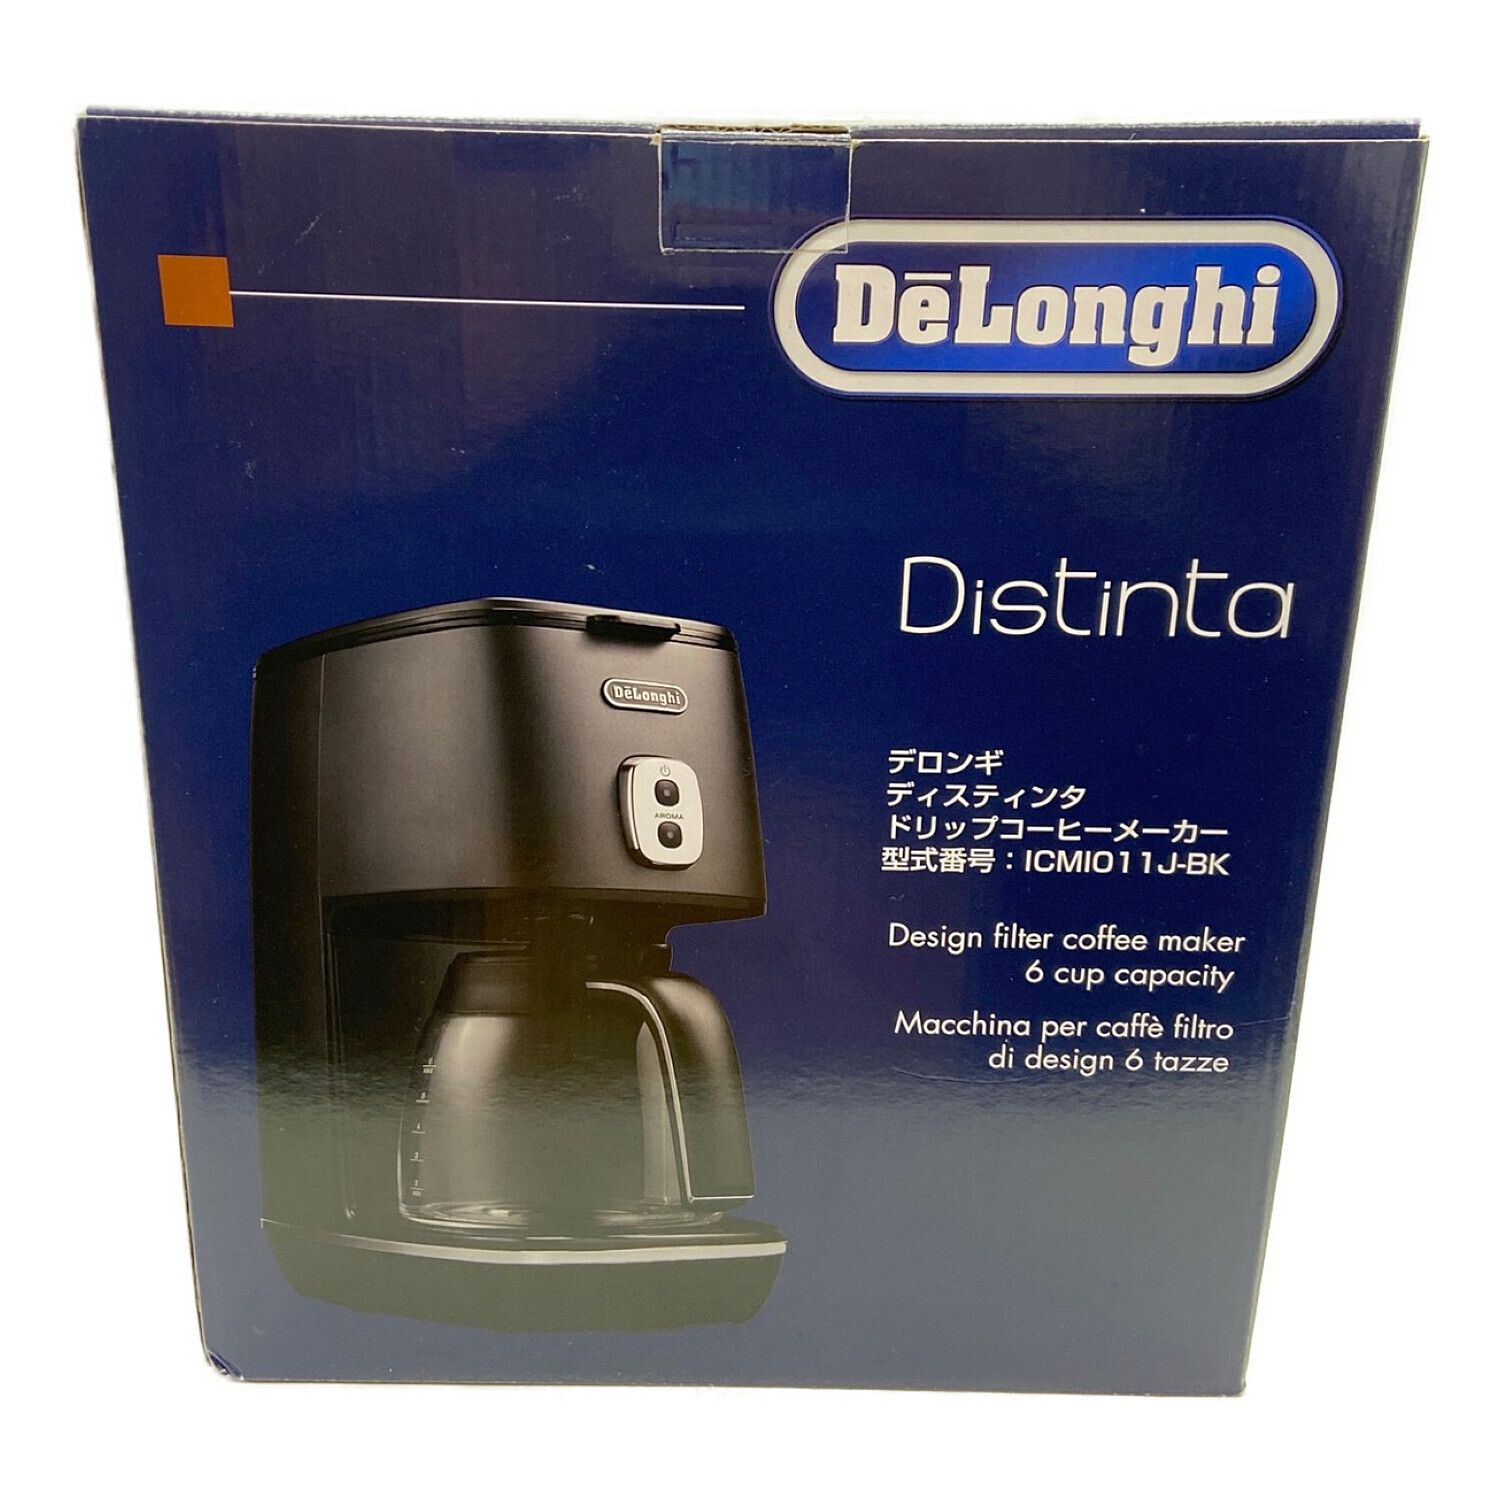 新品未使用 DeLonghiディスティンタ ドリップコーヒーメーカー